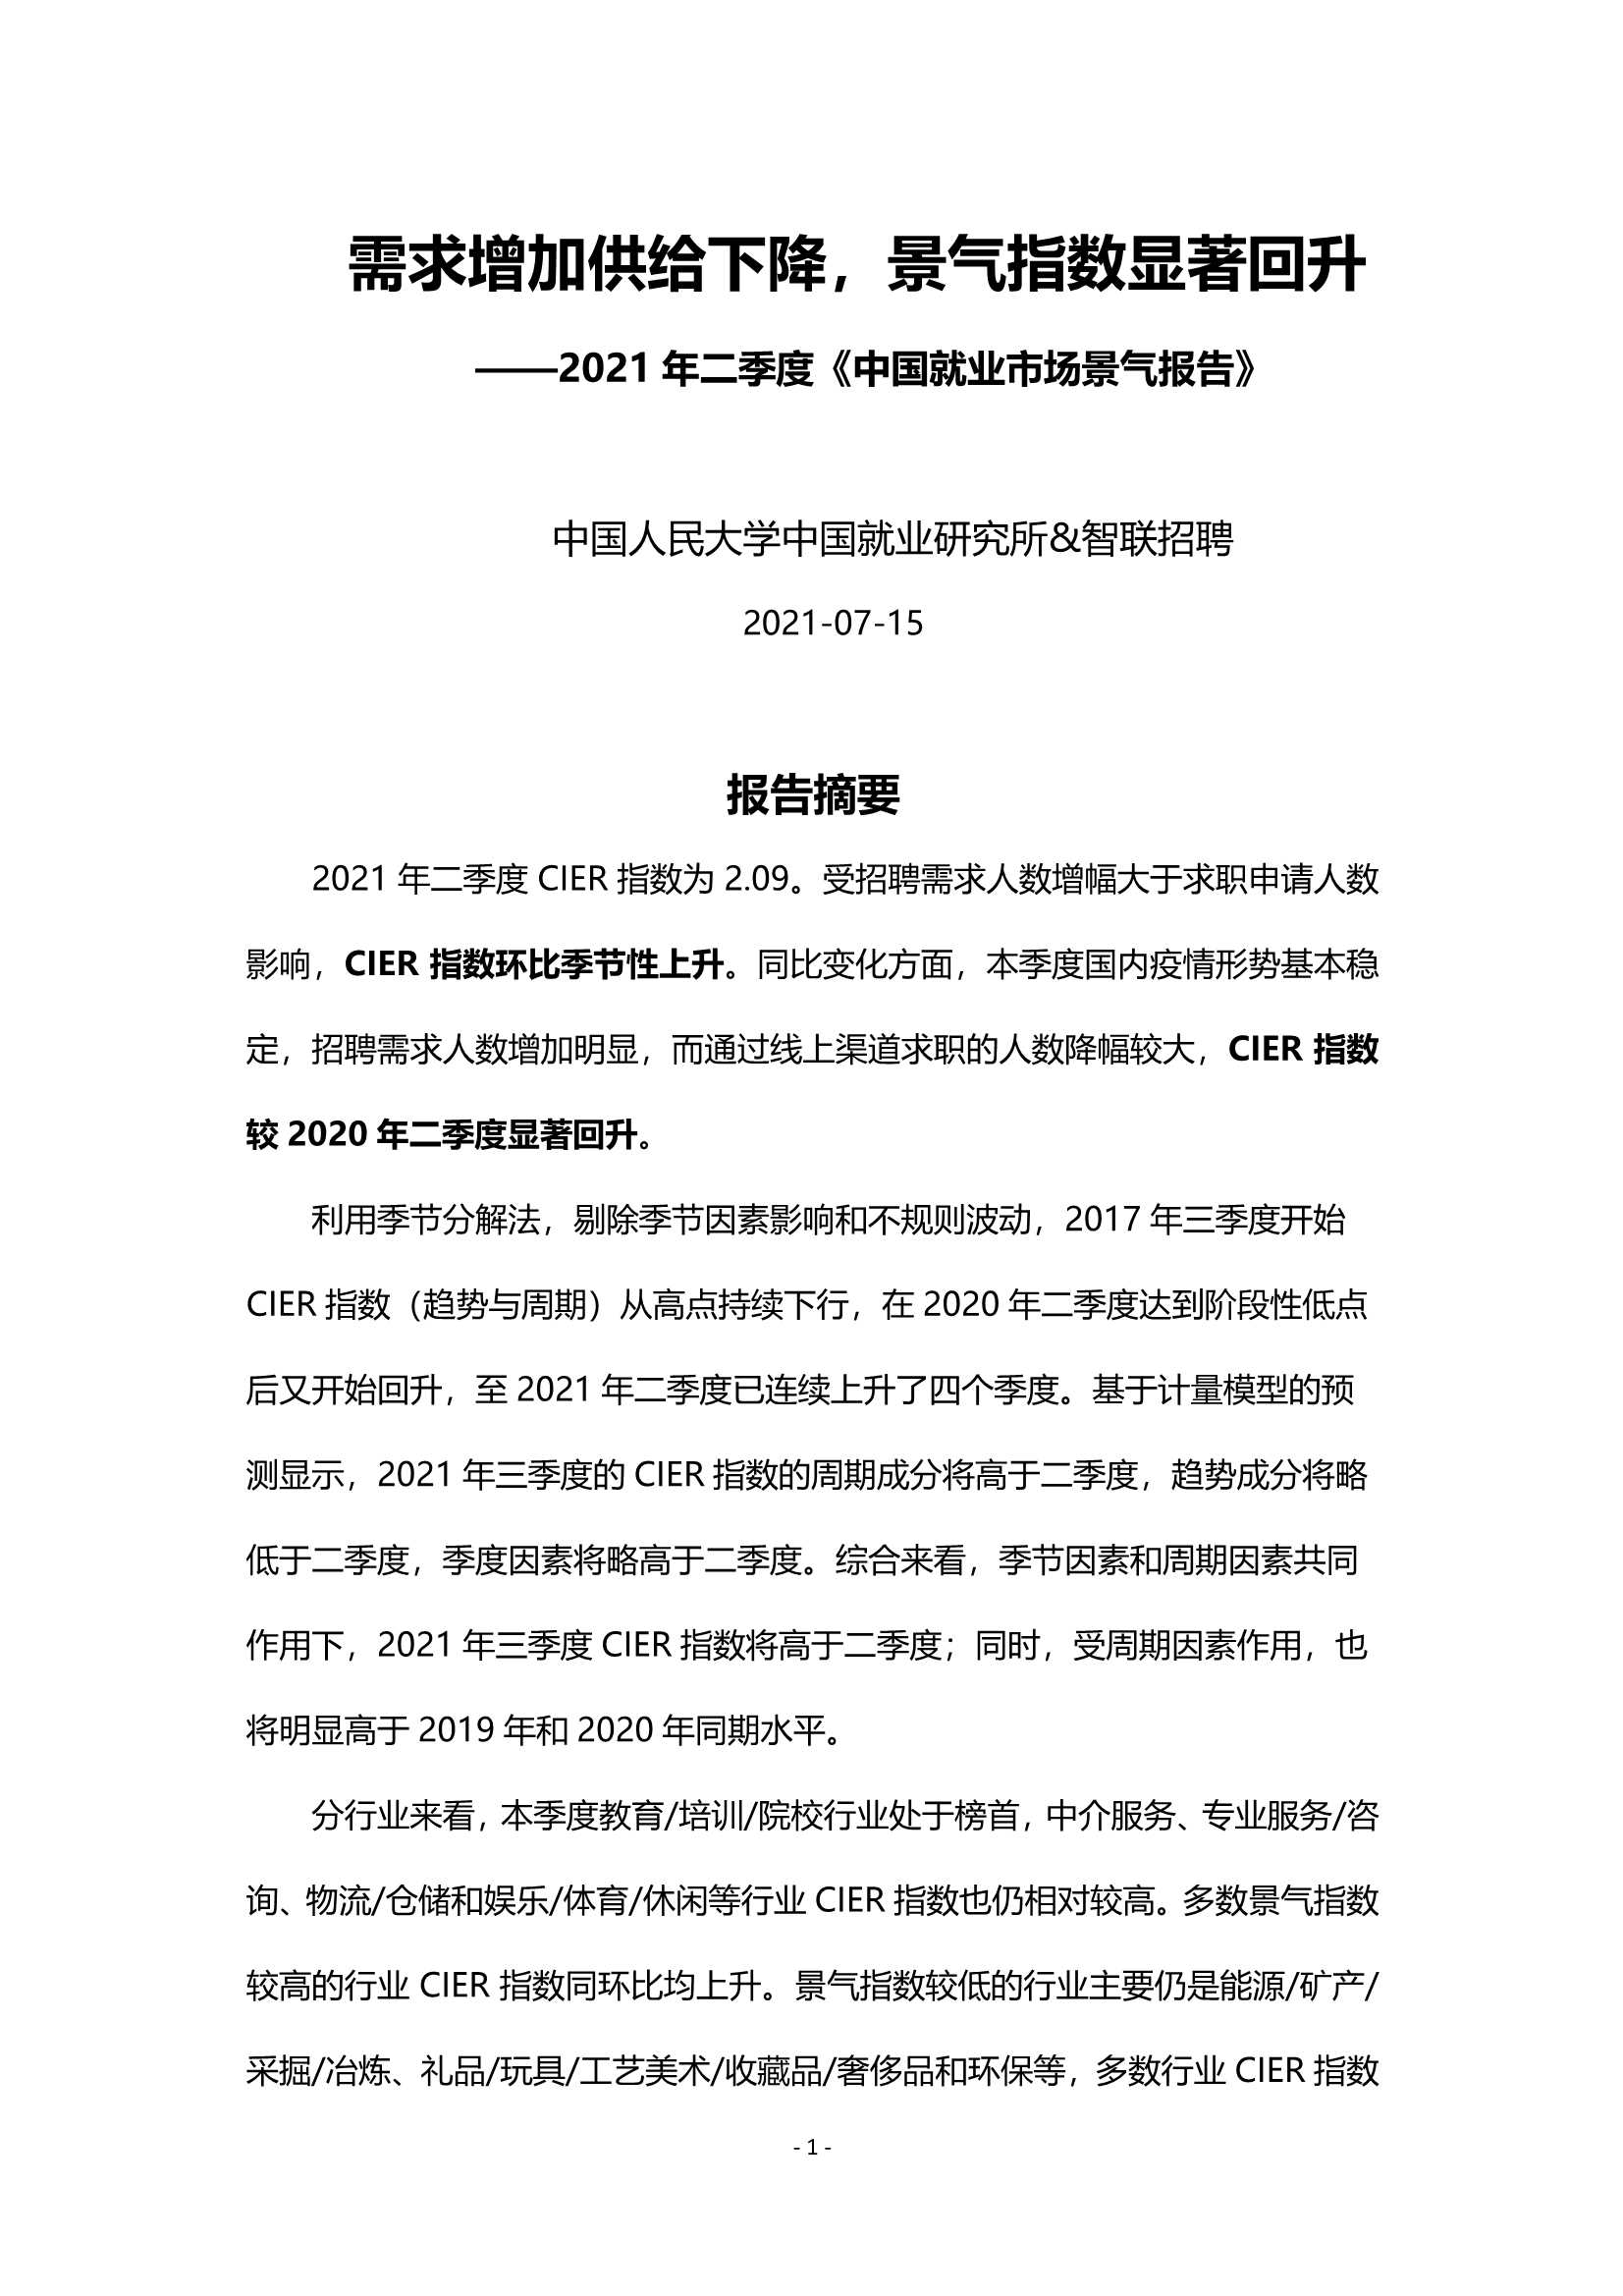 2021年第二季度 中国就业市场景气报告-2021.09-21页